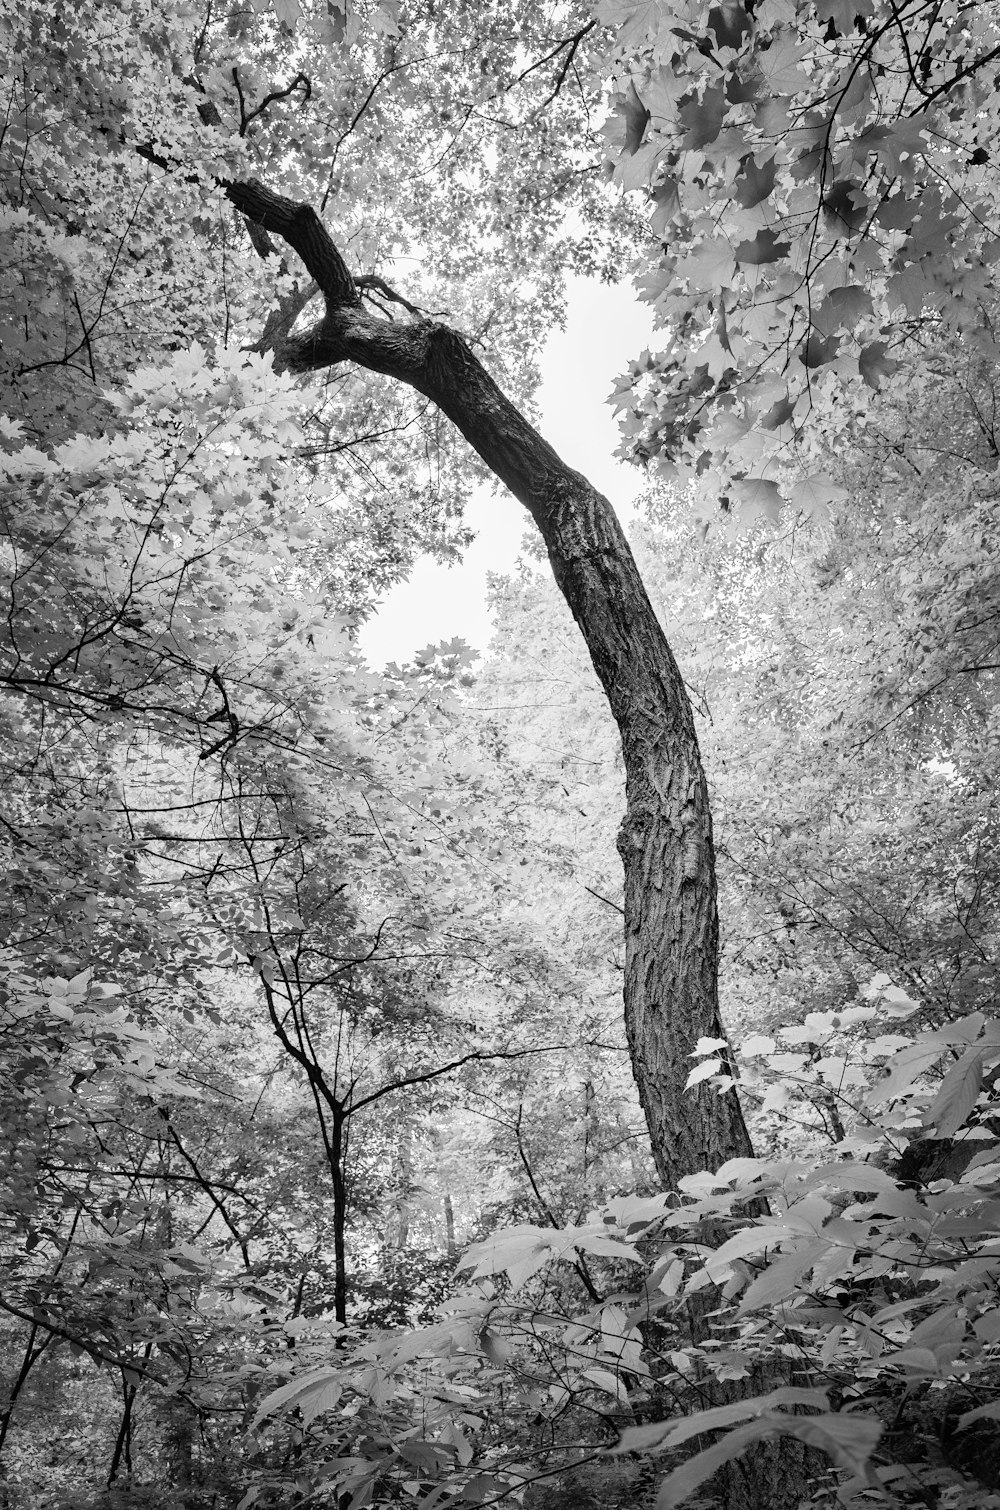 fotografia in scala di grigi dell'albero